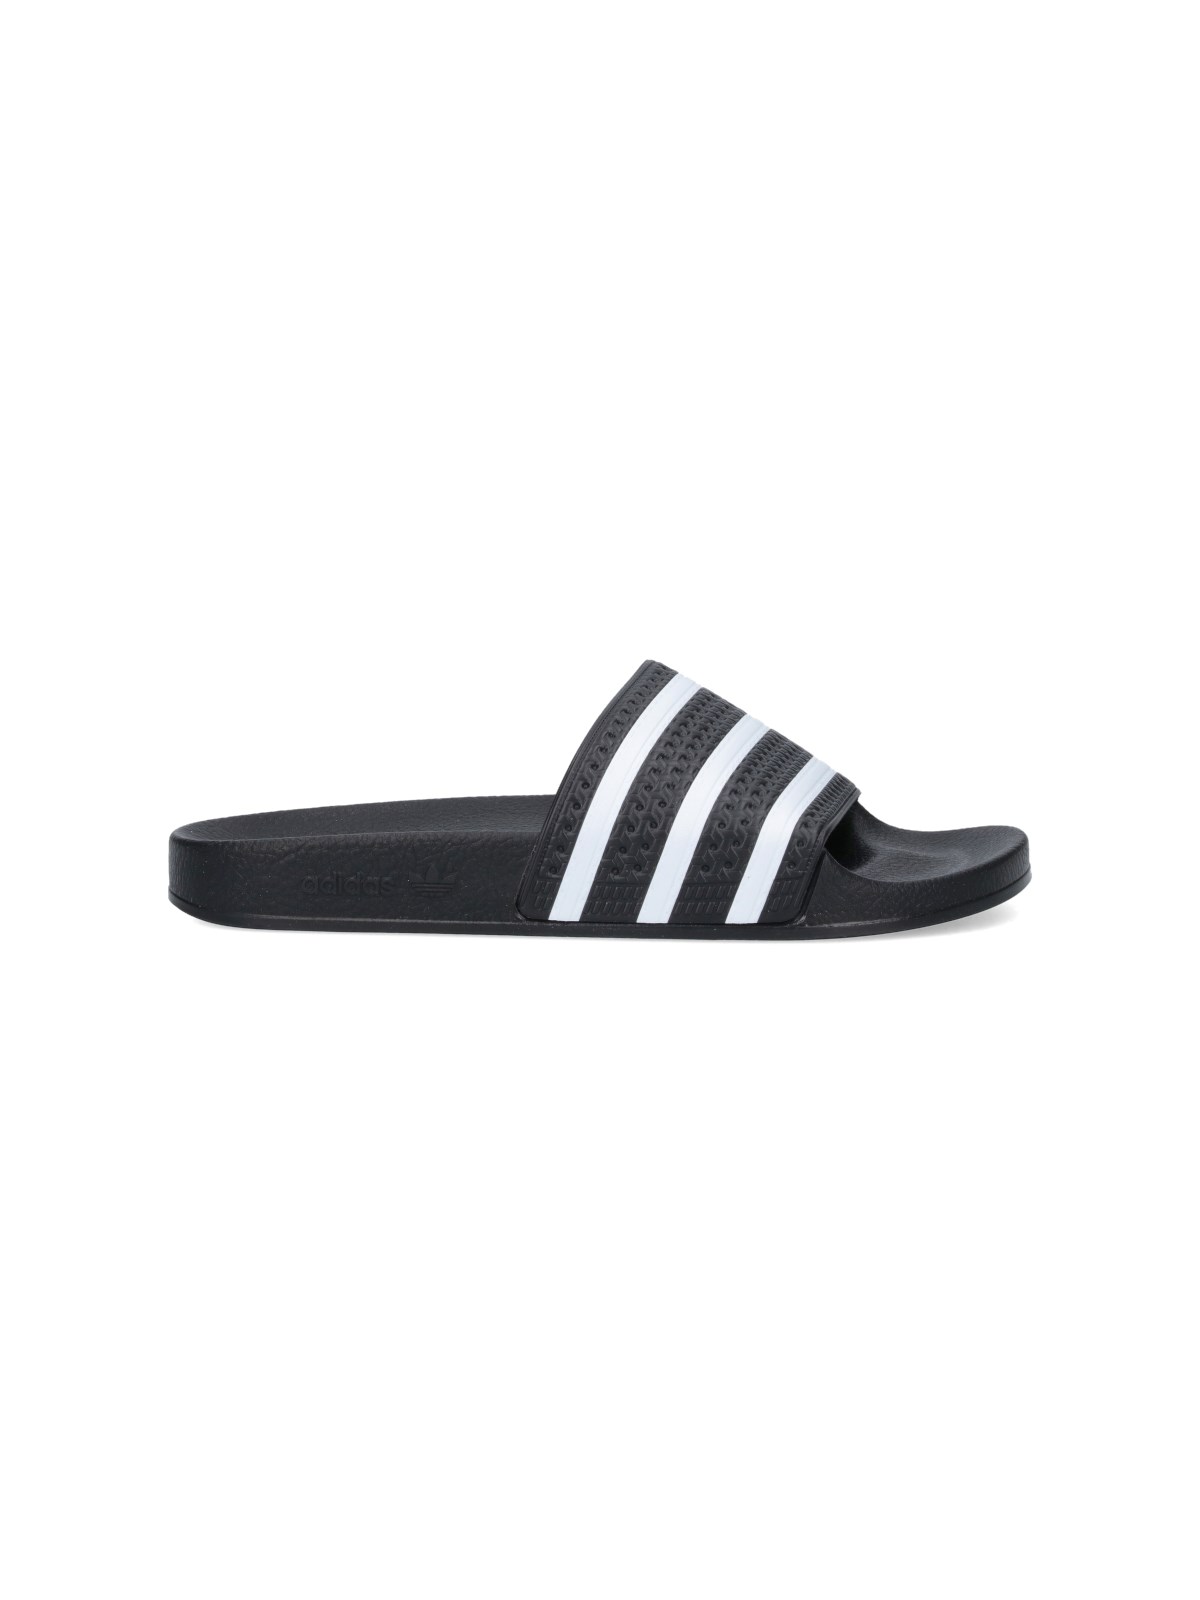 Adidas Originals Adilette Sandals In Black